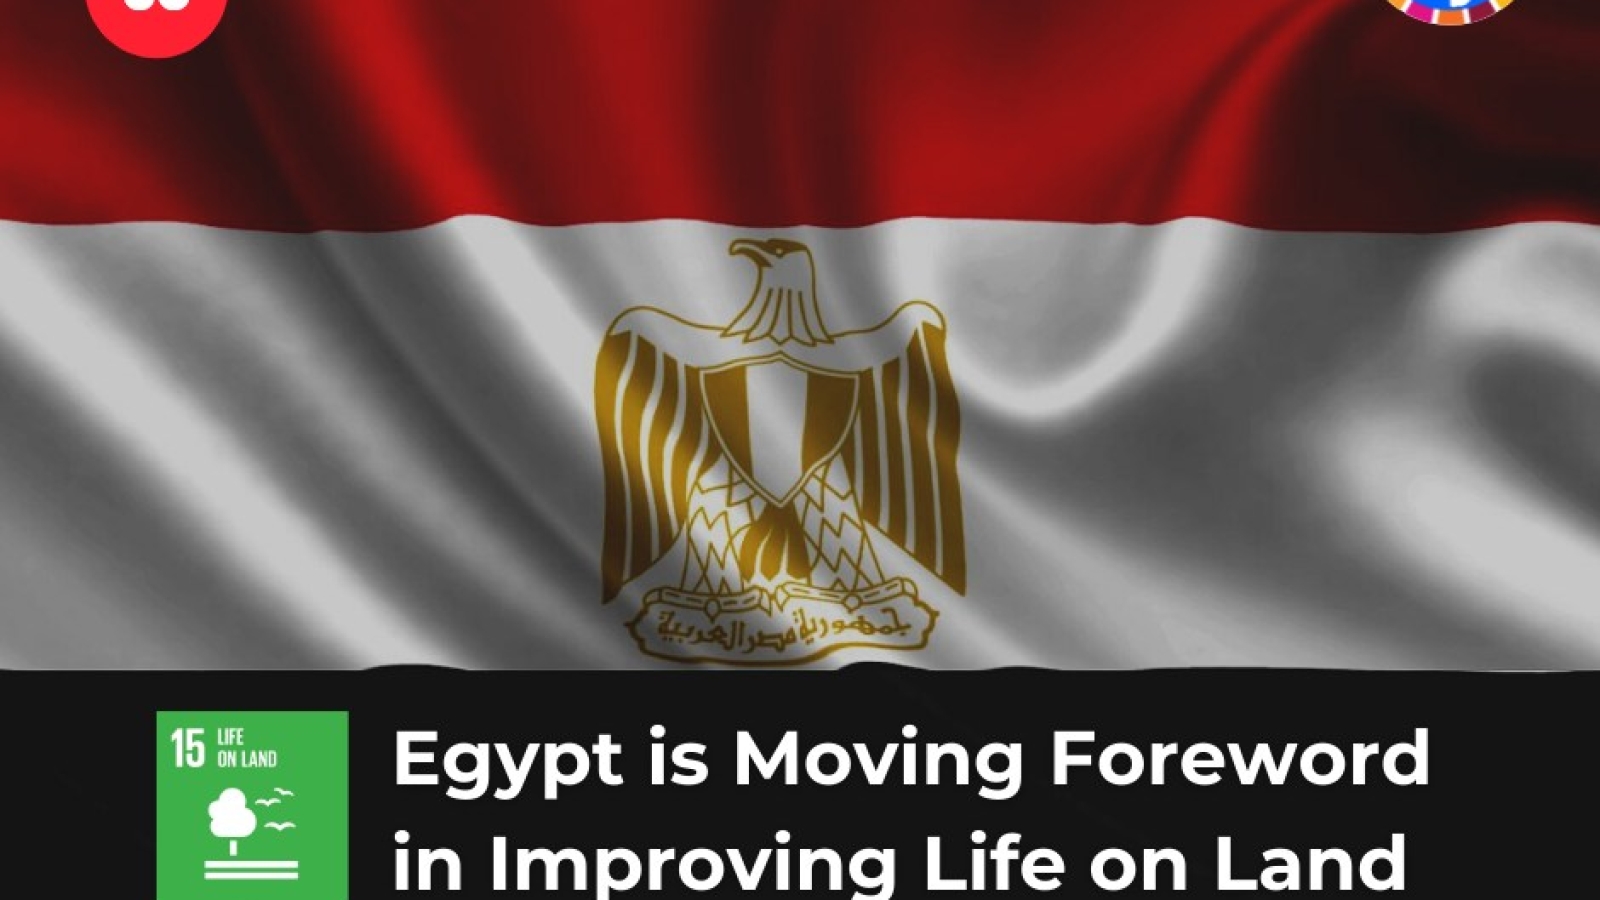 L’Égypte avance avant-propos pour améliorer la vie sur terre